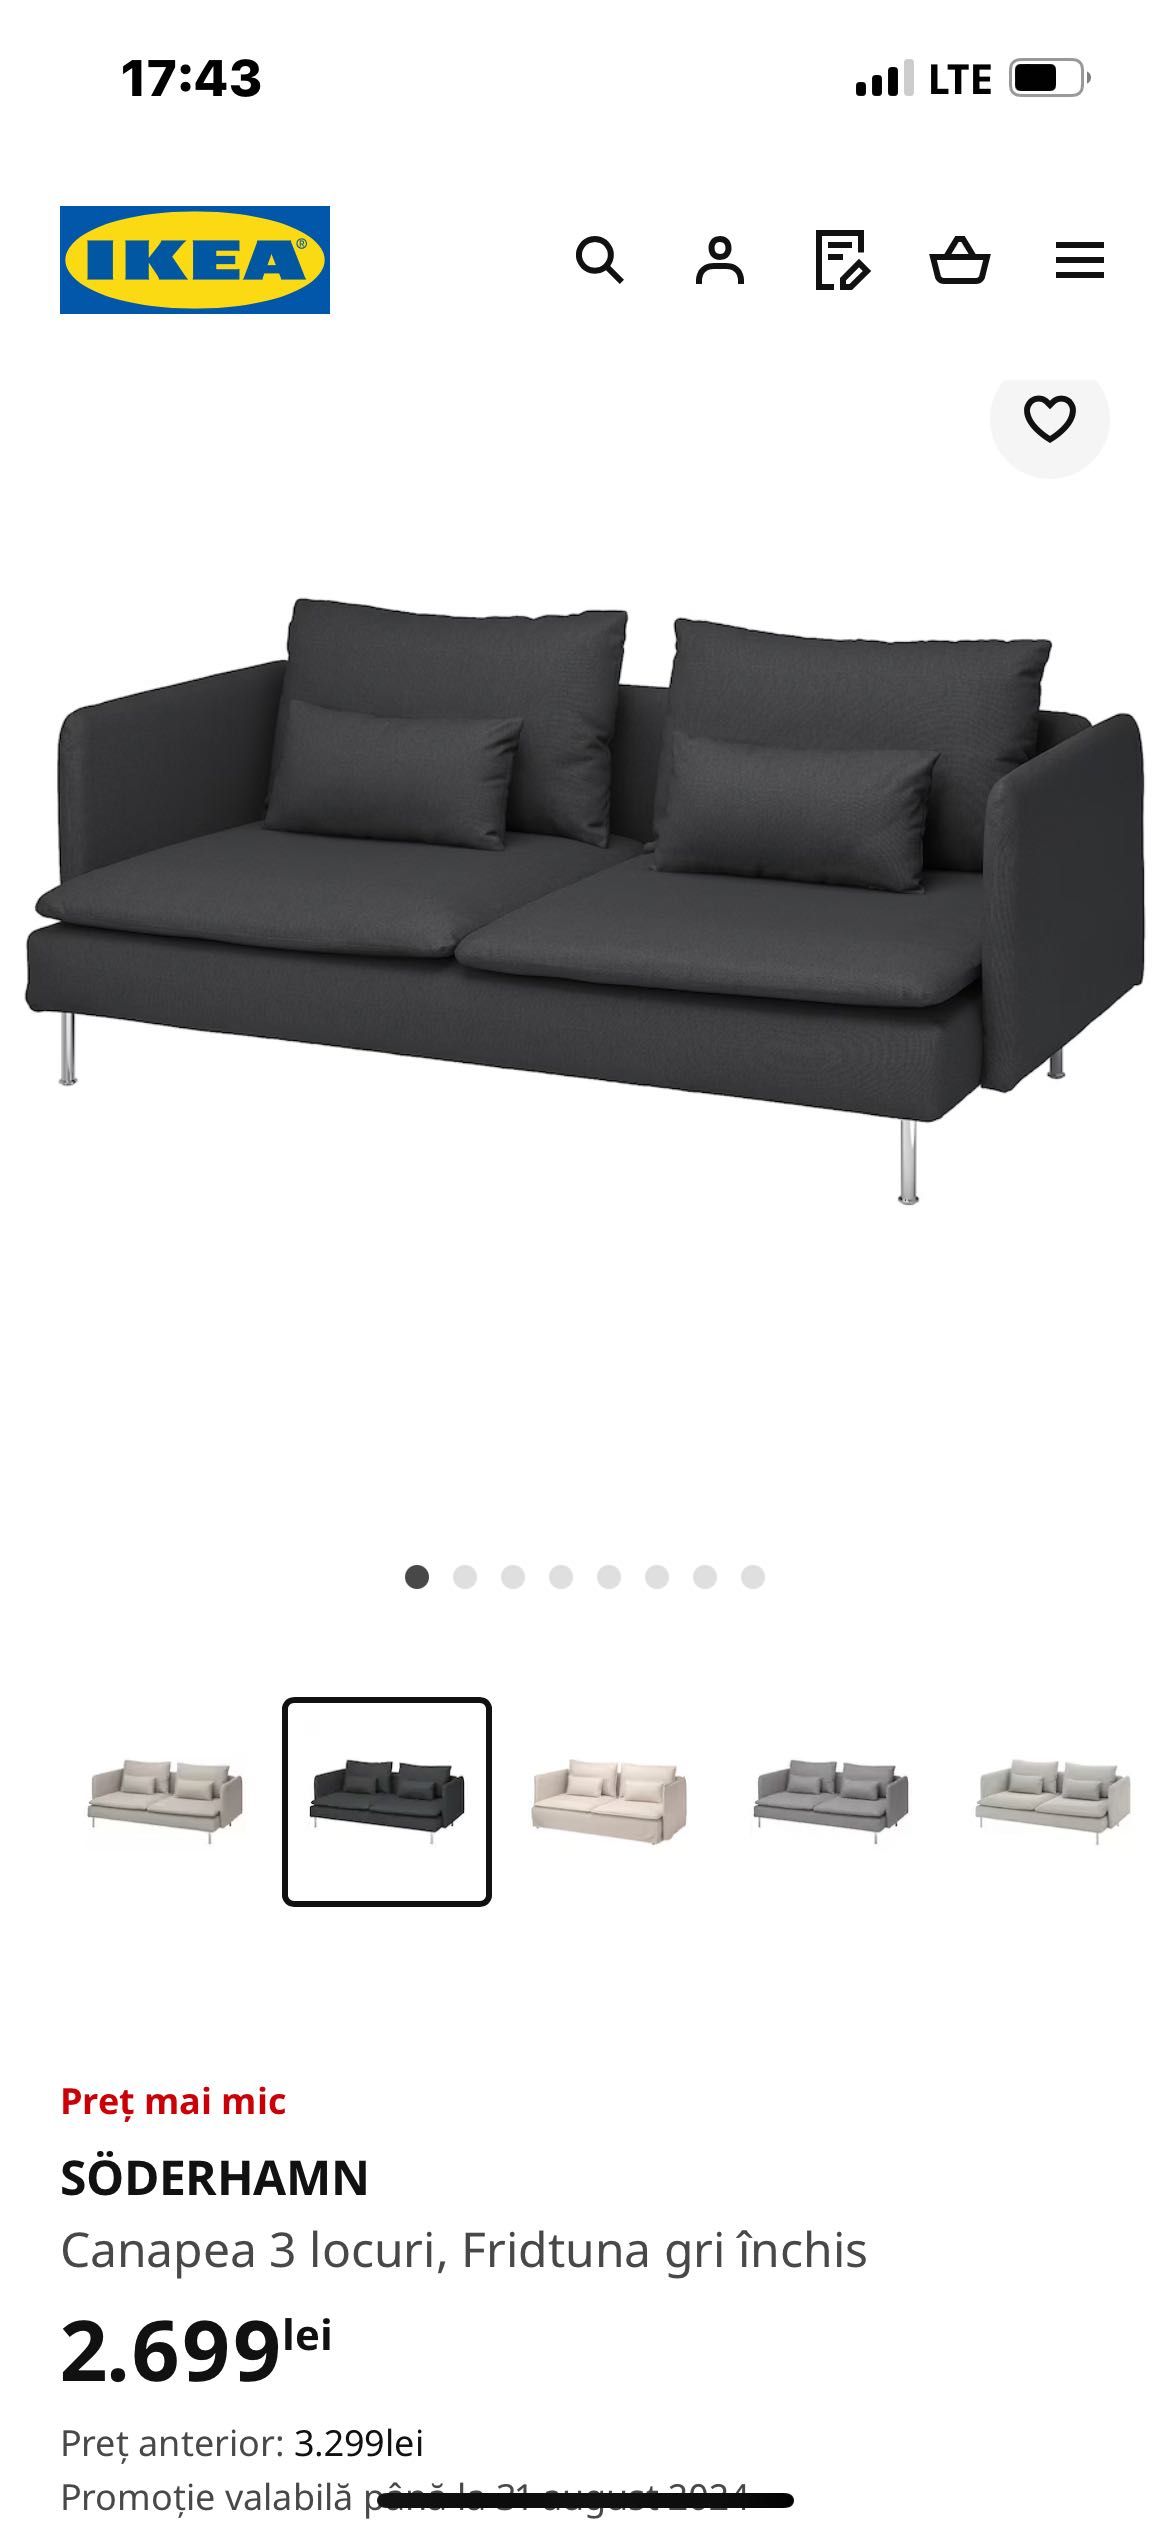 Canapea Ikea 3 locuri